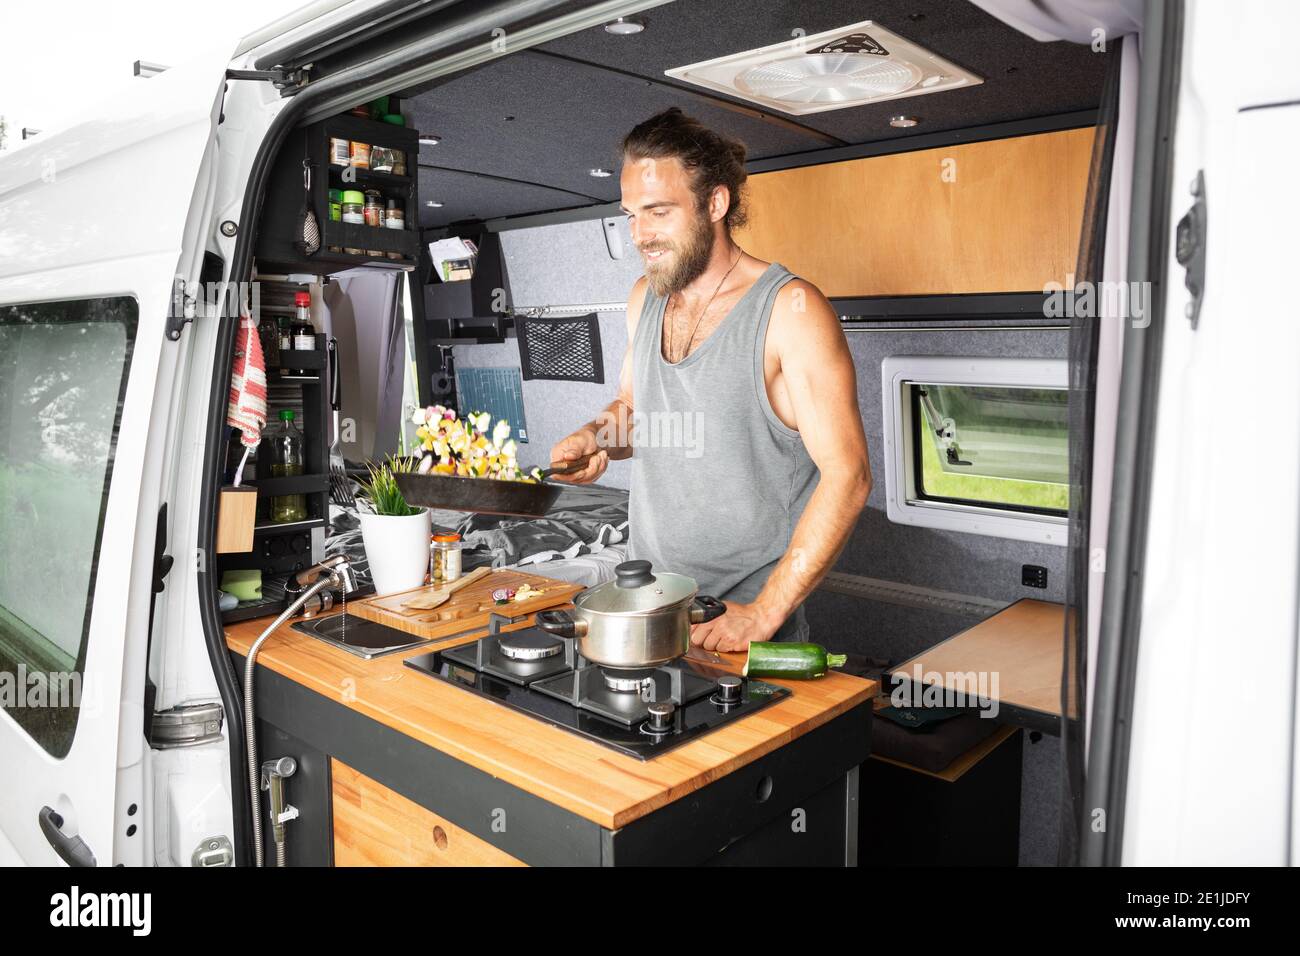 Hombre sonriente cocinando dentro de su camioneta Foto de stock